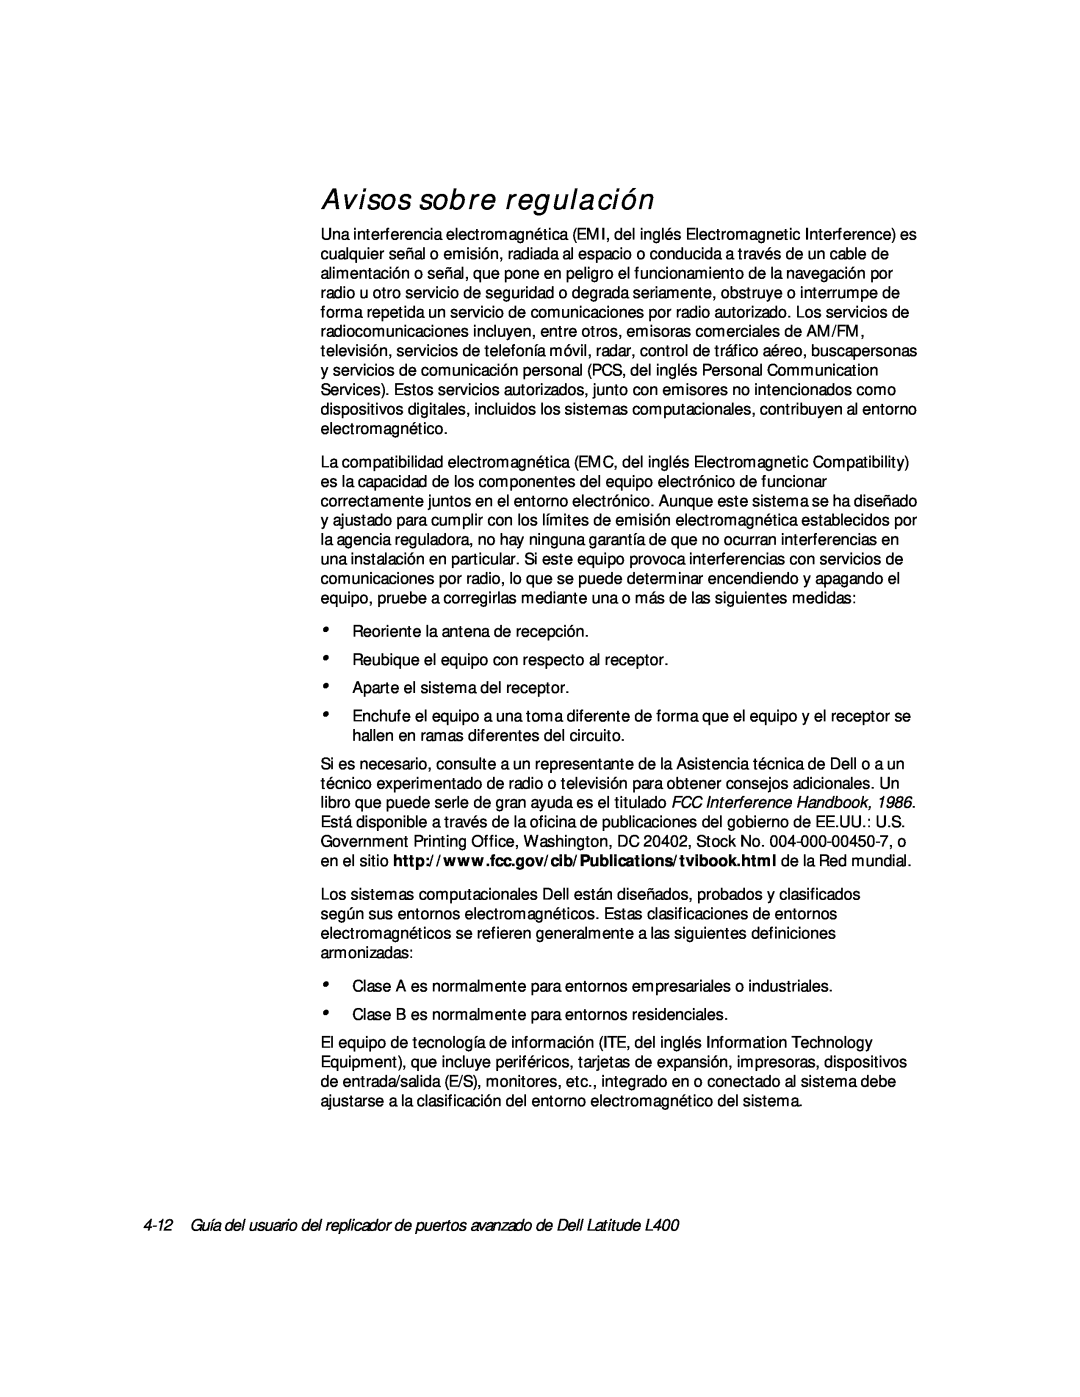 Dell L400 manual Avisos sobre regulación 